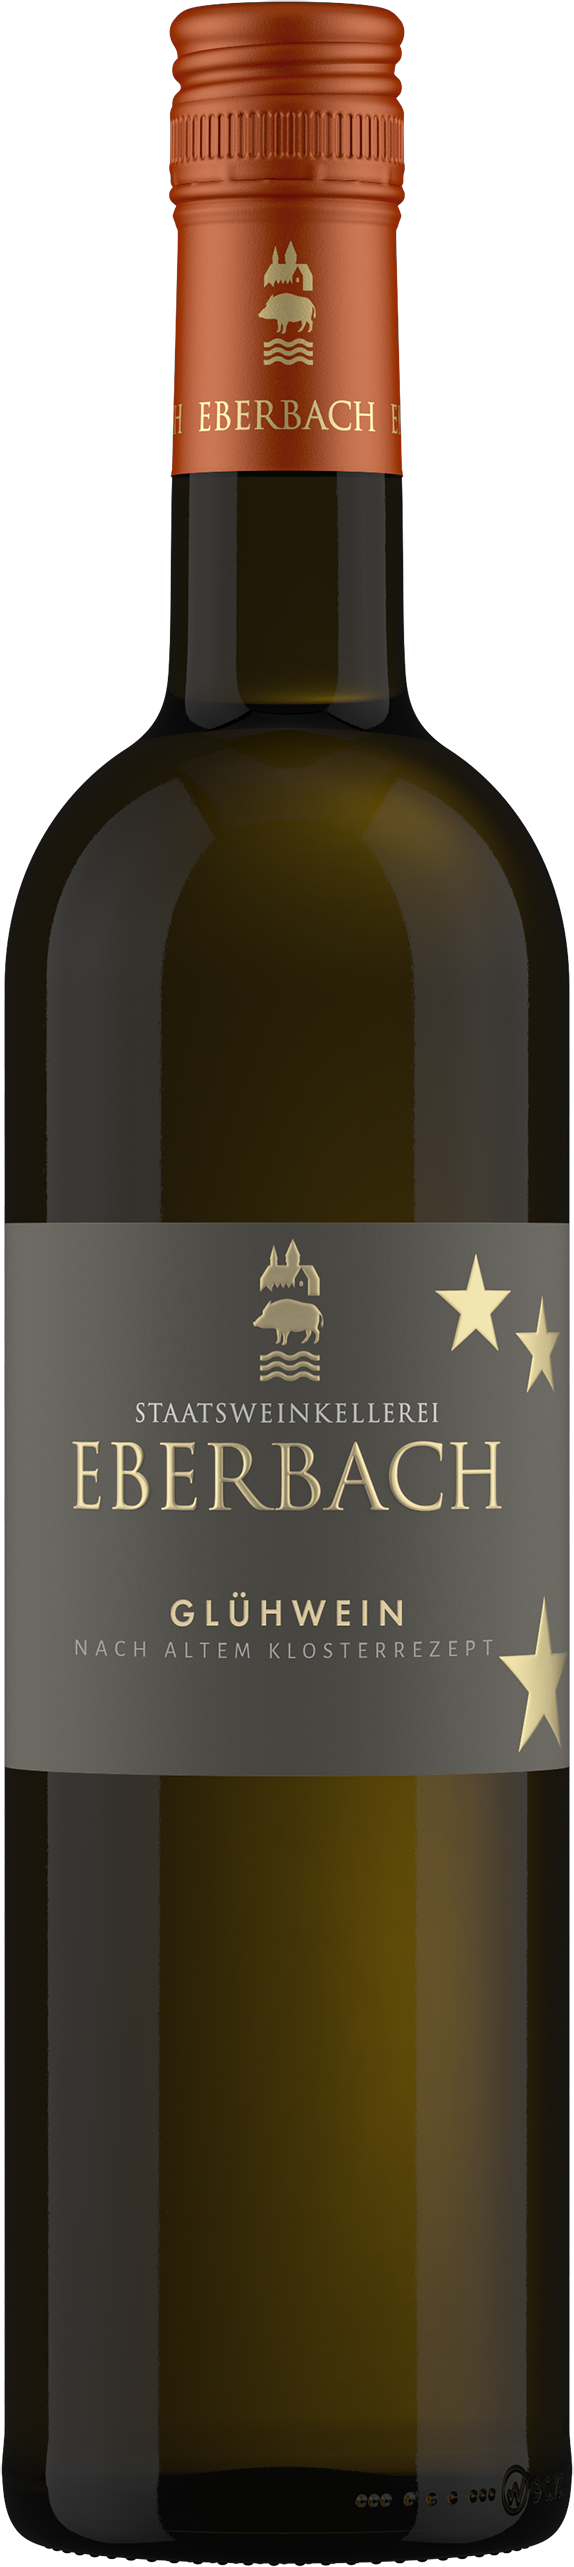 Kloster Eberbach Wein online kaufen & bestellen